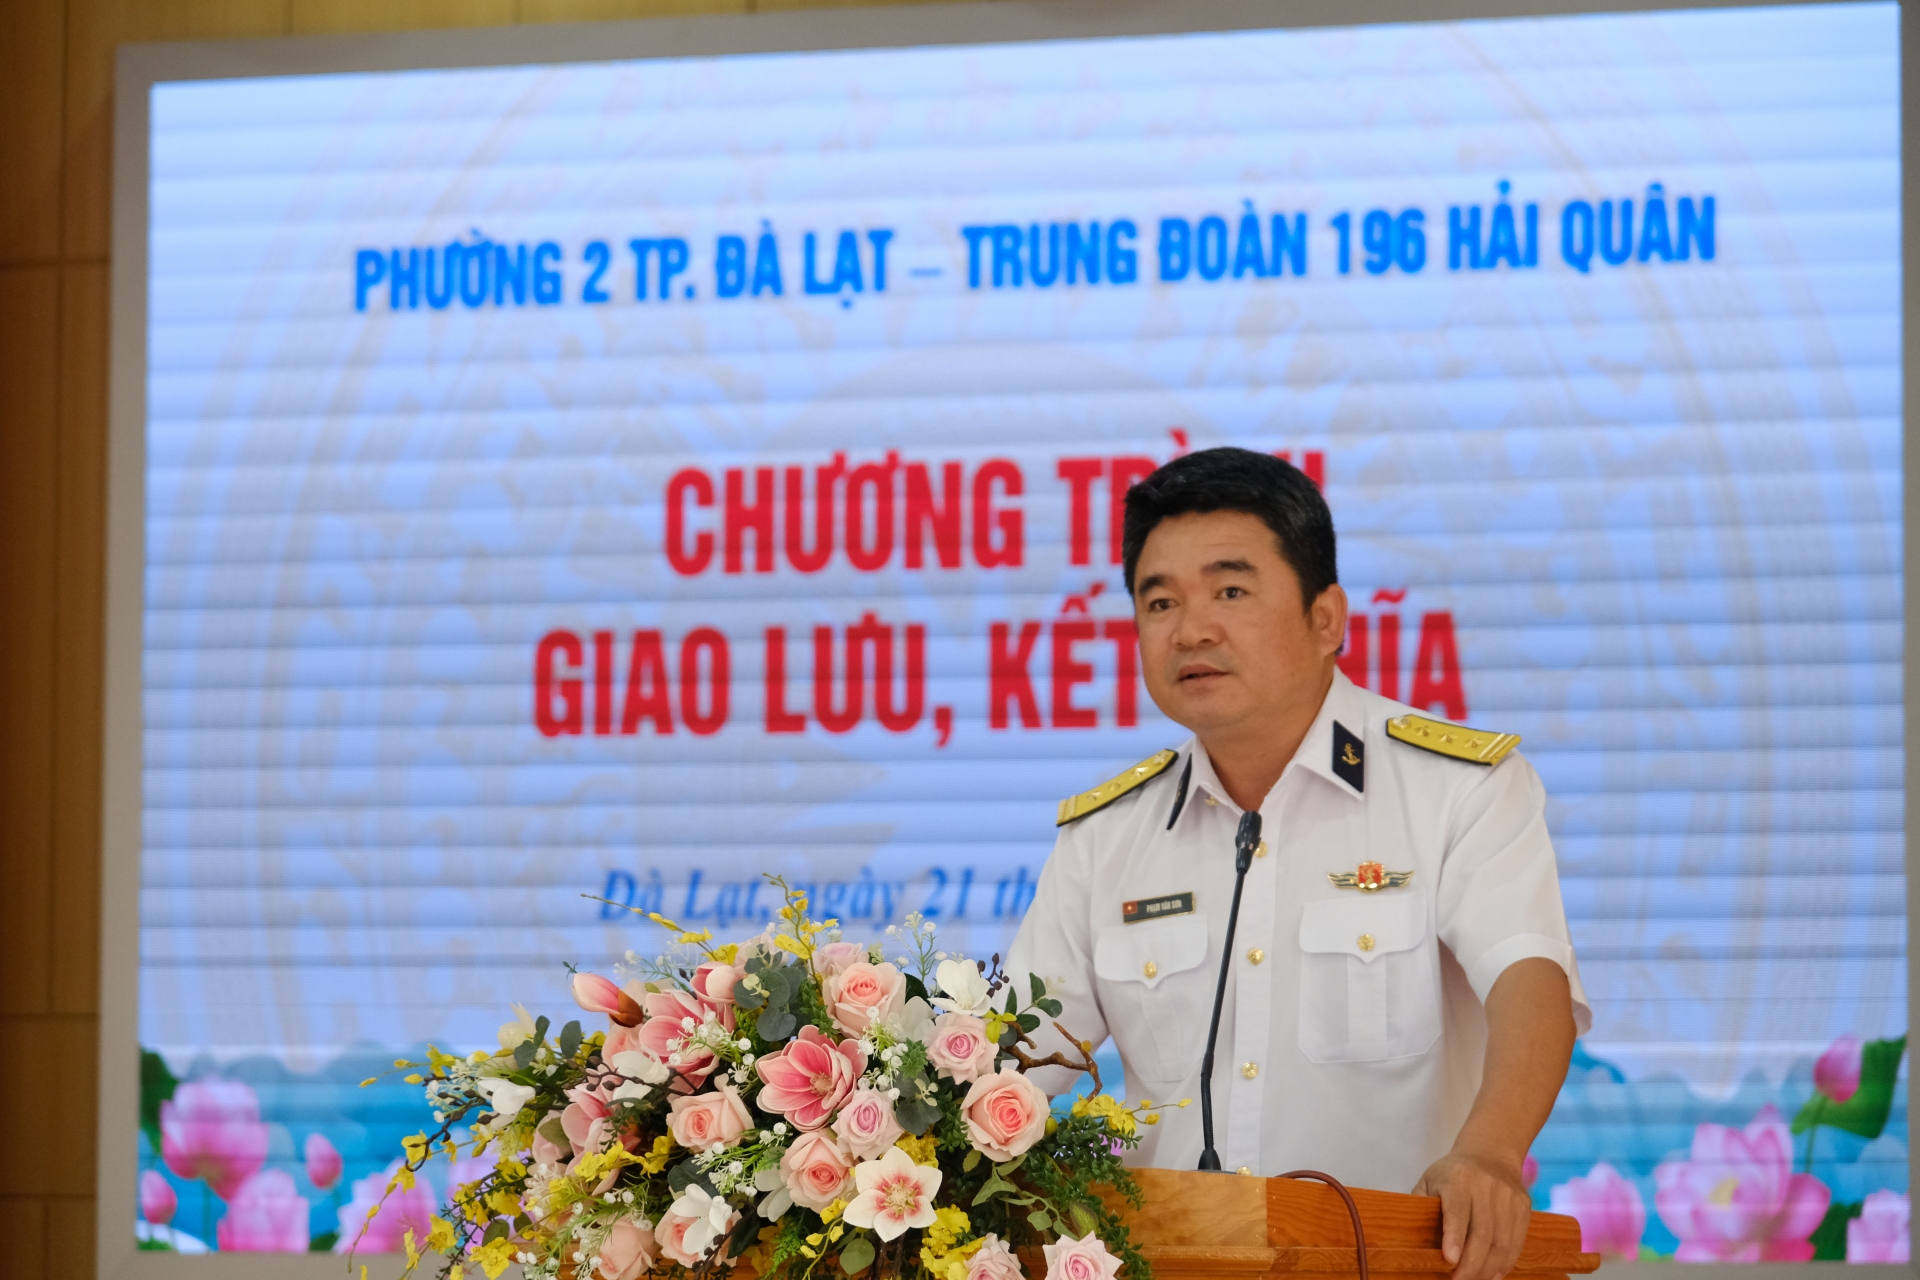 Thượng tá Phạm Văn Sơn - Phó Chính ủy Trung đoàn 196 thông qua quy chế phối hợp của 2 đơn vị